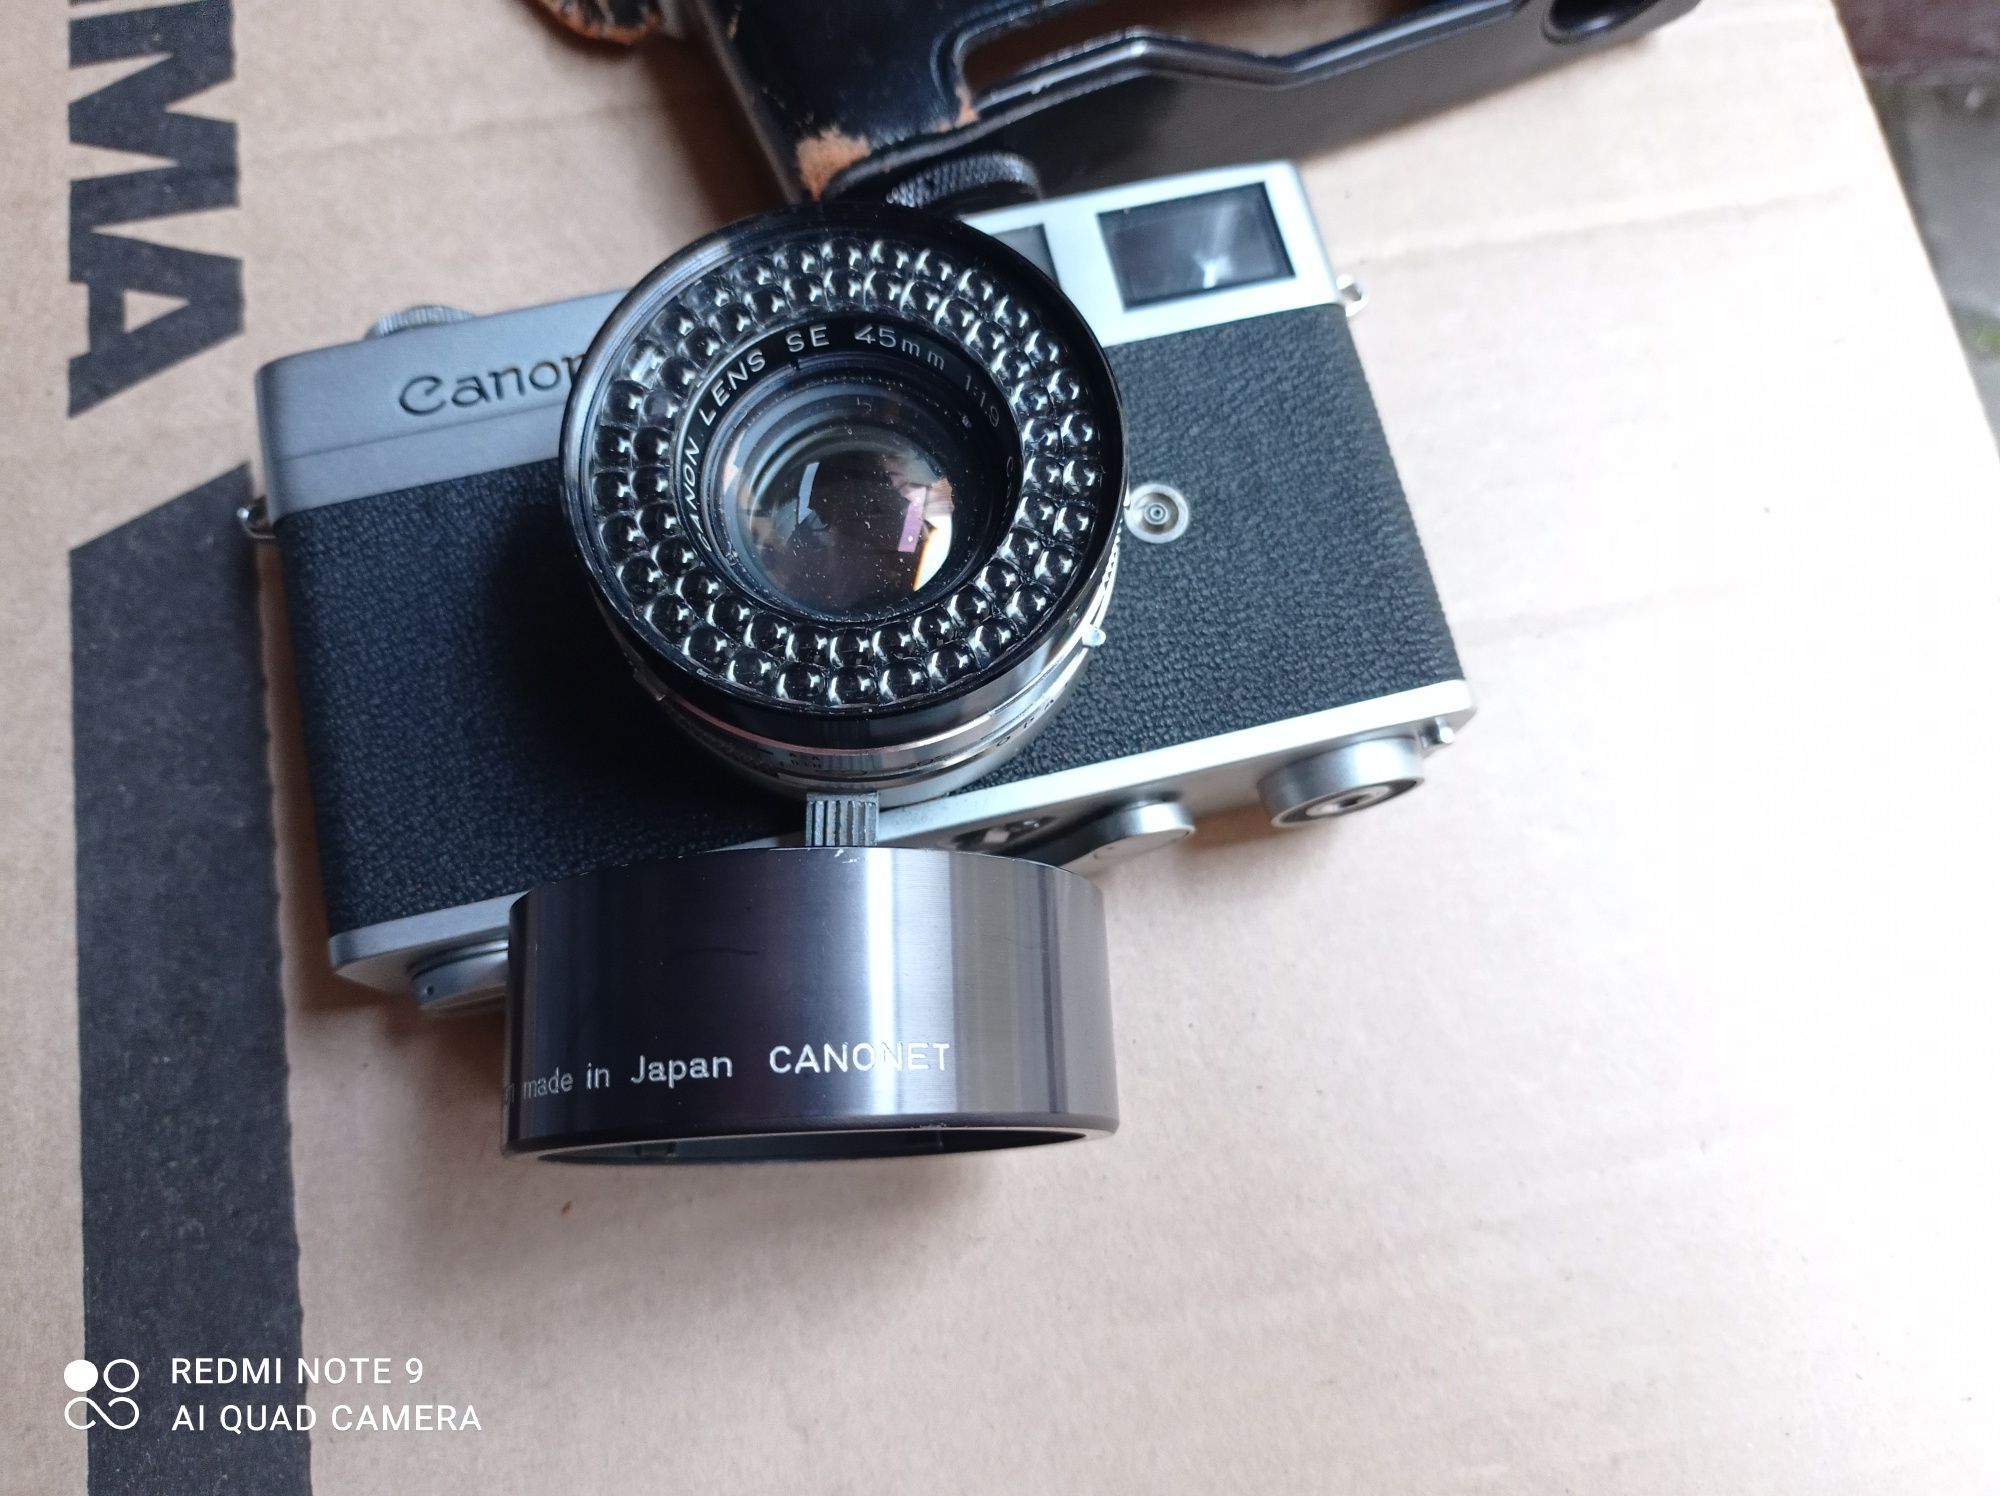 Canon Canonet 45mm, aparat fotograficzny